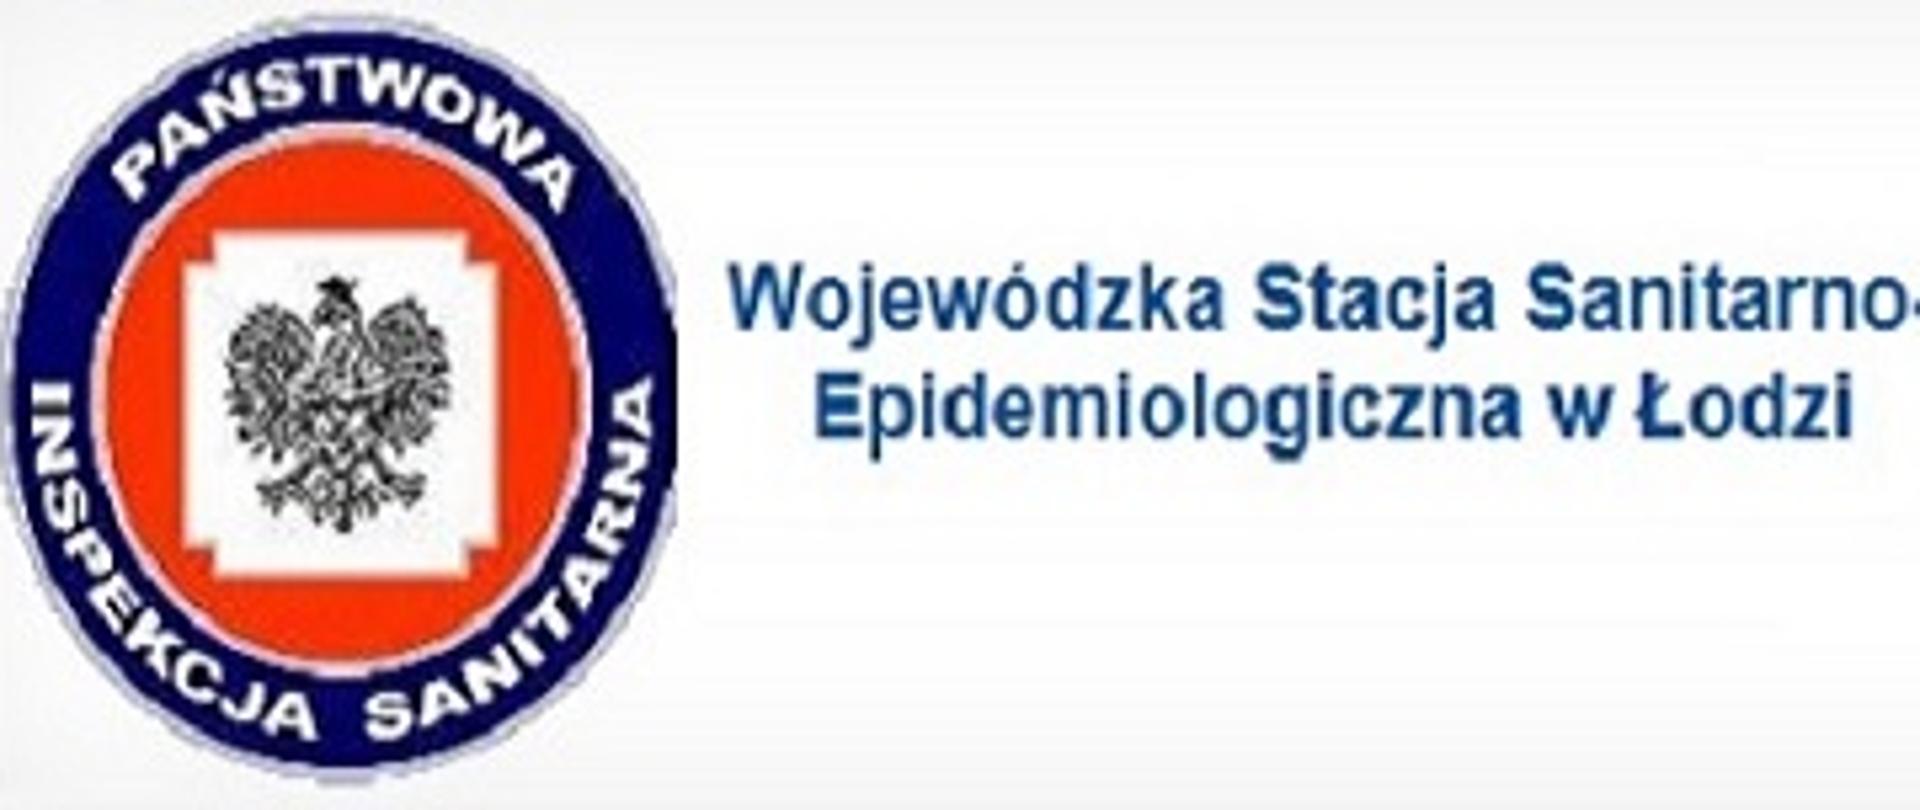 Wojewódzka Stacja Sanitarno-Epidemiologiczna w Łodzi